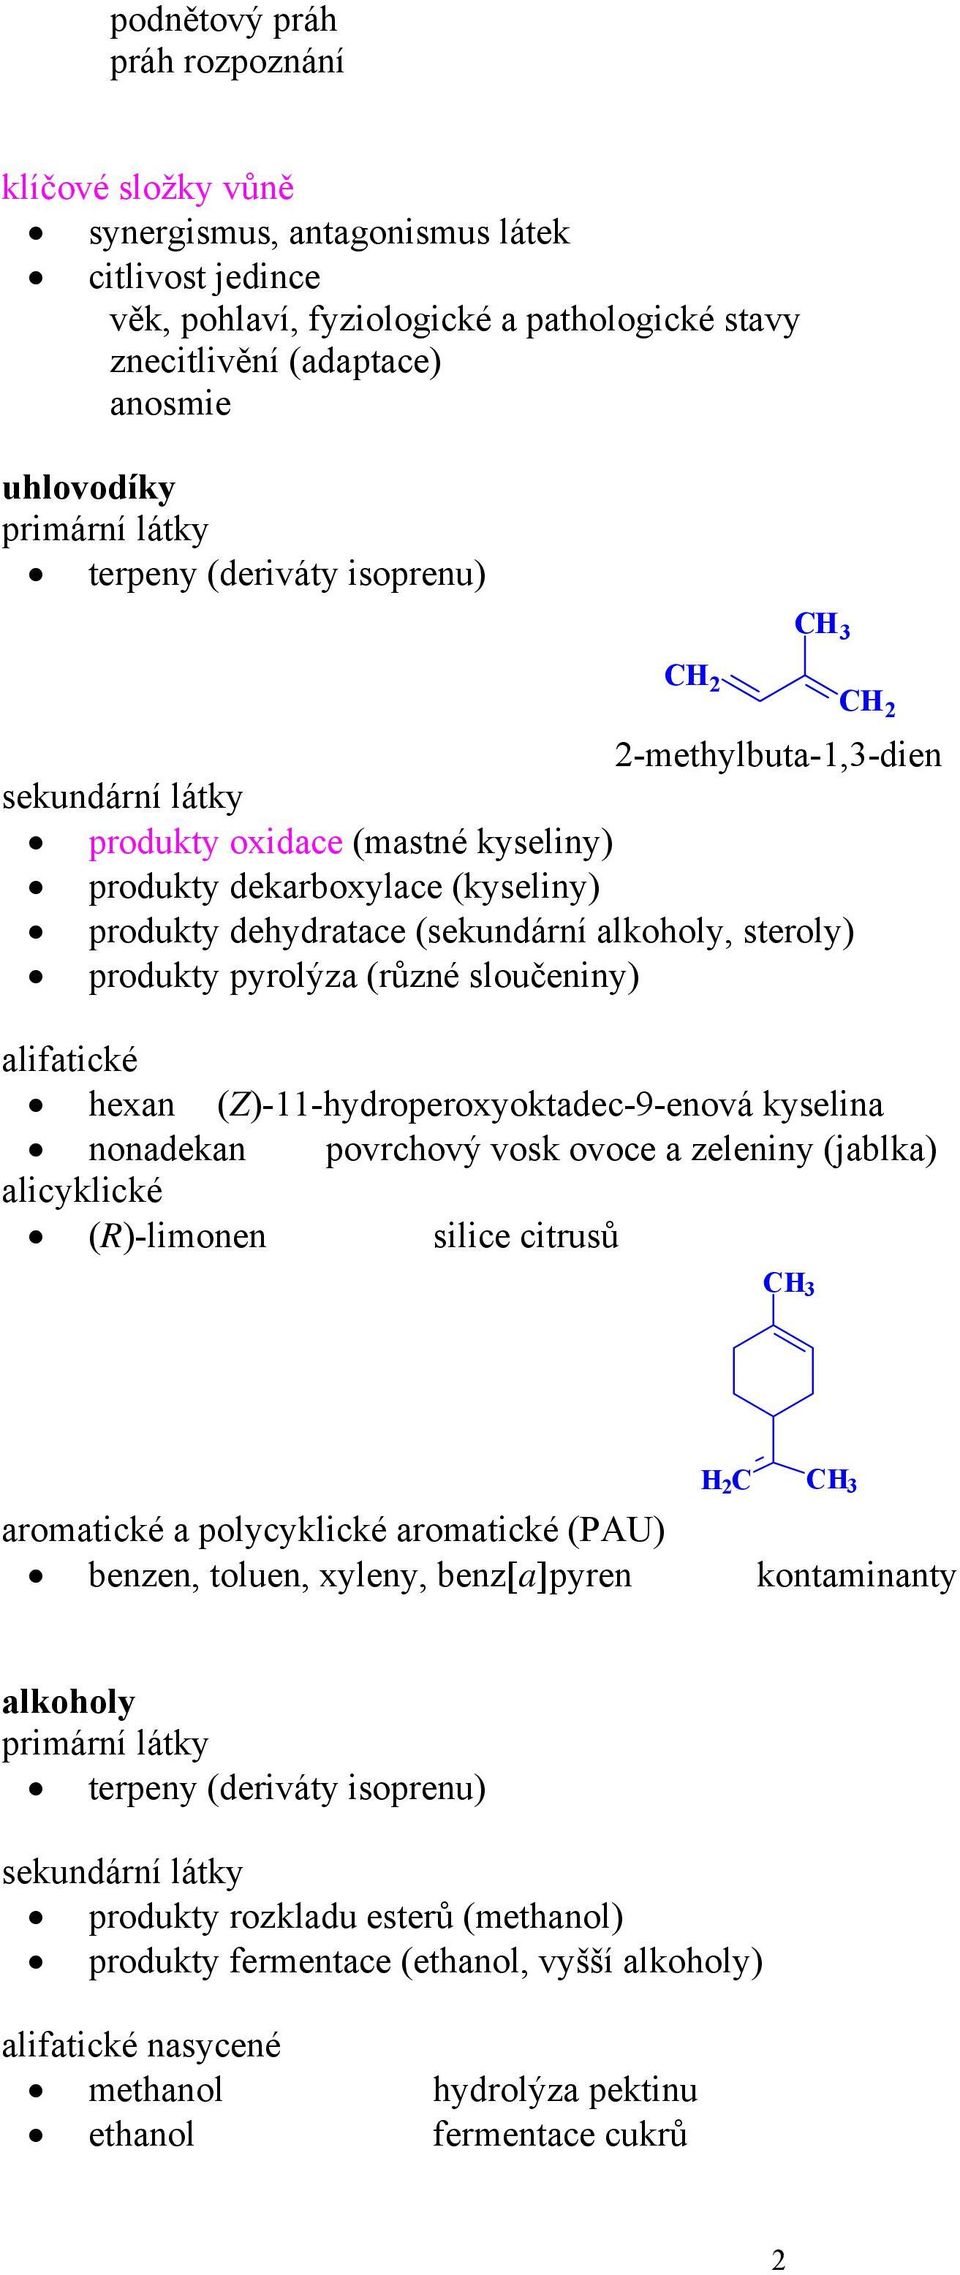 alifatické hexan (Z)--hydroperoxyoktadec-9-enová kyselina nonadekan povrchový vosk ovoce a zeleniny (jablka) alicyklické ()-limonen silice citrusů H C aromatické a polycyklické aromatické (PAU)